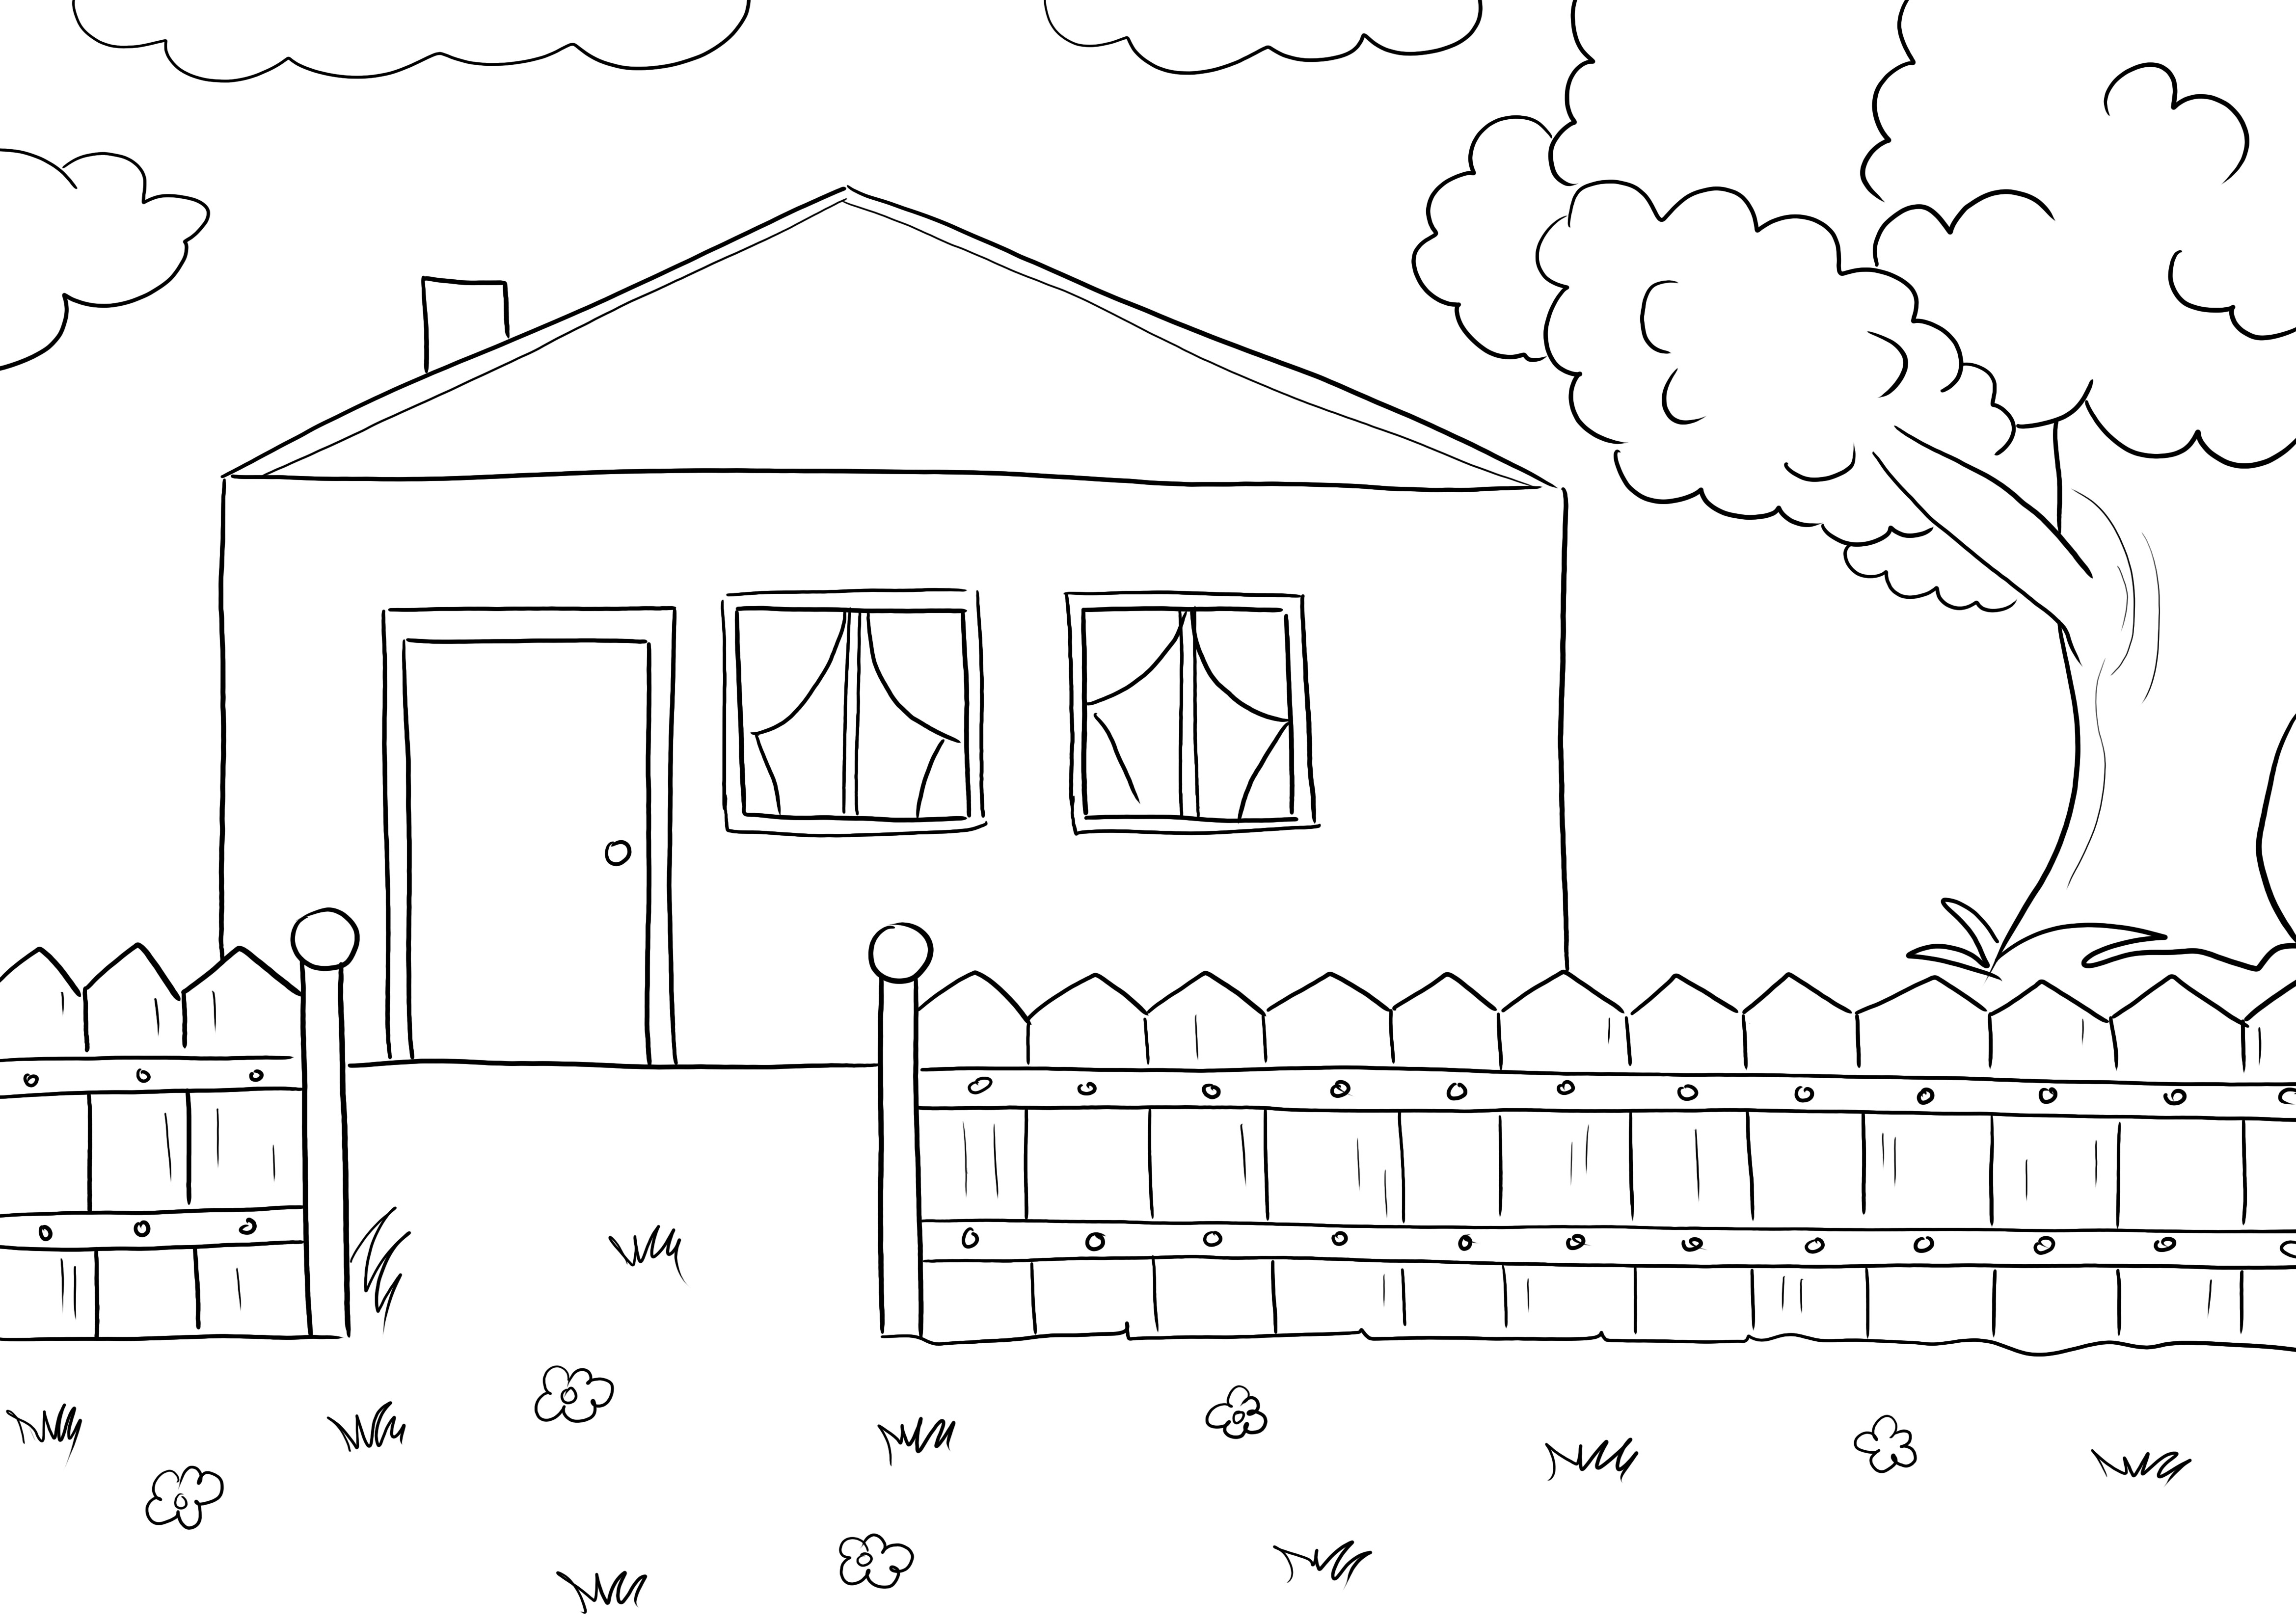 A legjobb ingyenes színező kép egy vidéki házról, amelyet a gyerekek könnyen rajzolhatnak